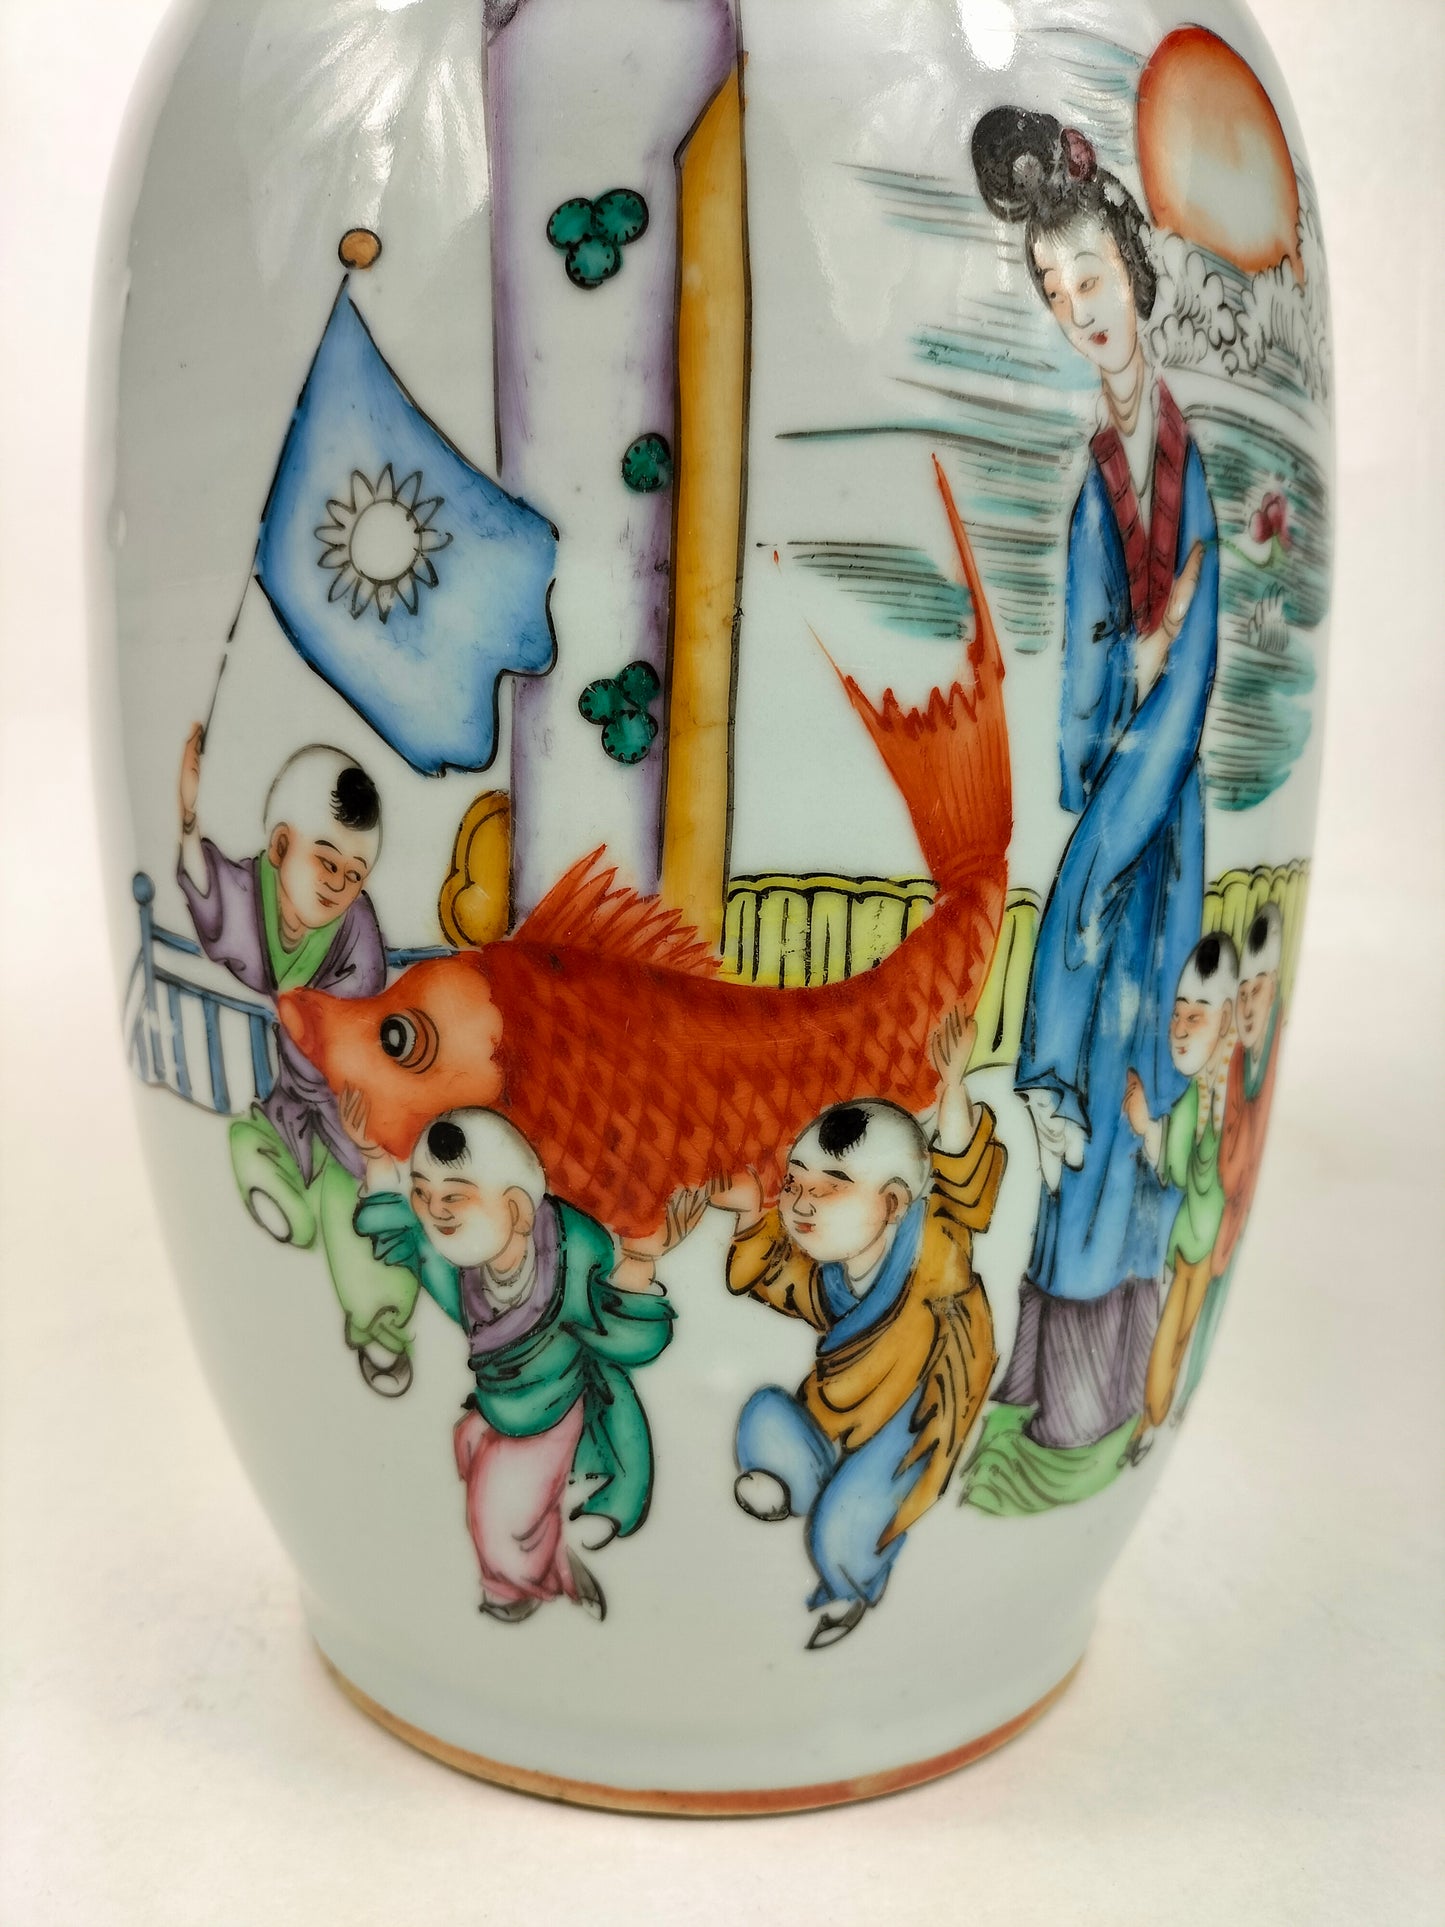 古董中国花瓶，装饰着玩耍的孩子和鲤鱼//民国时期（1912-1949）